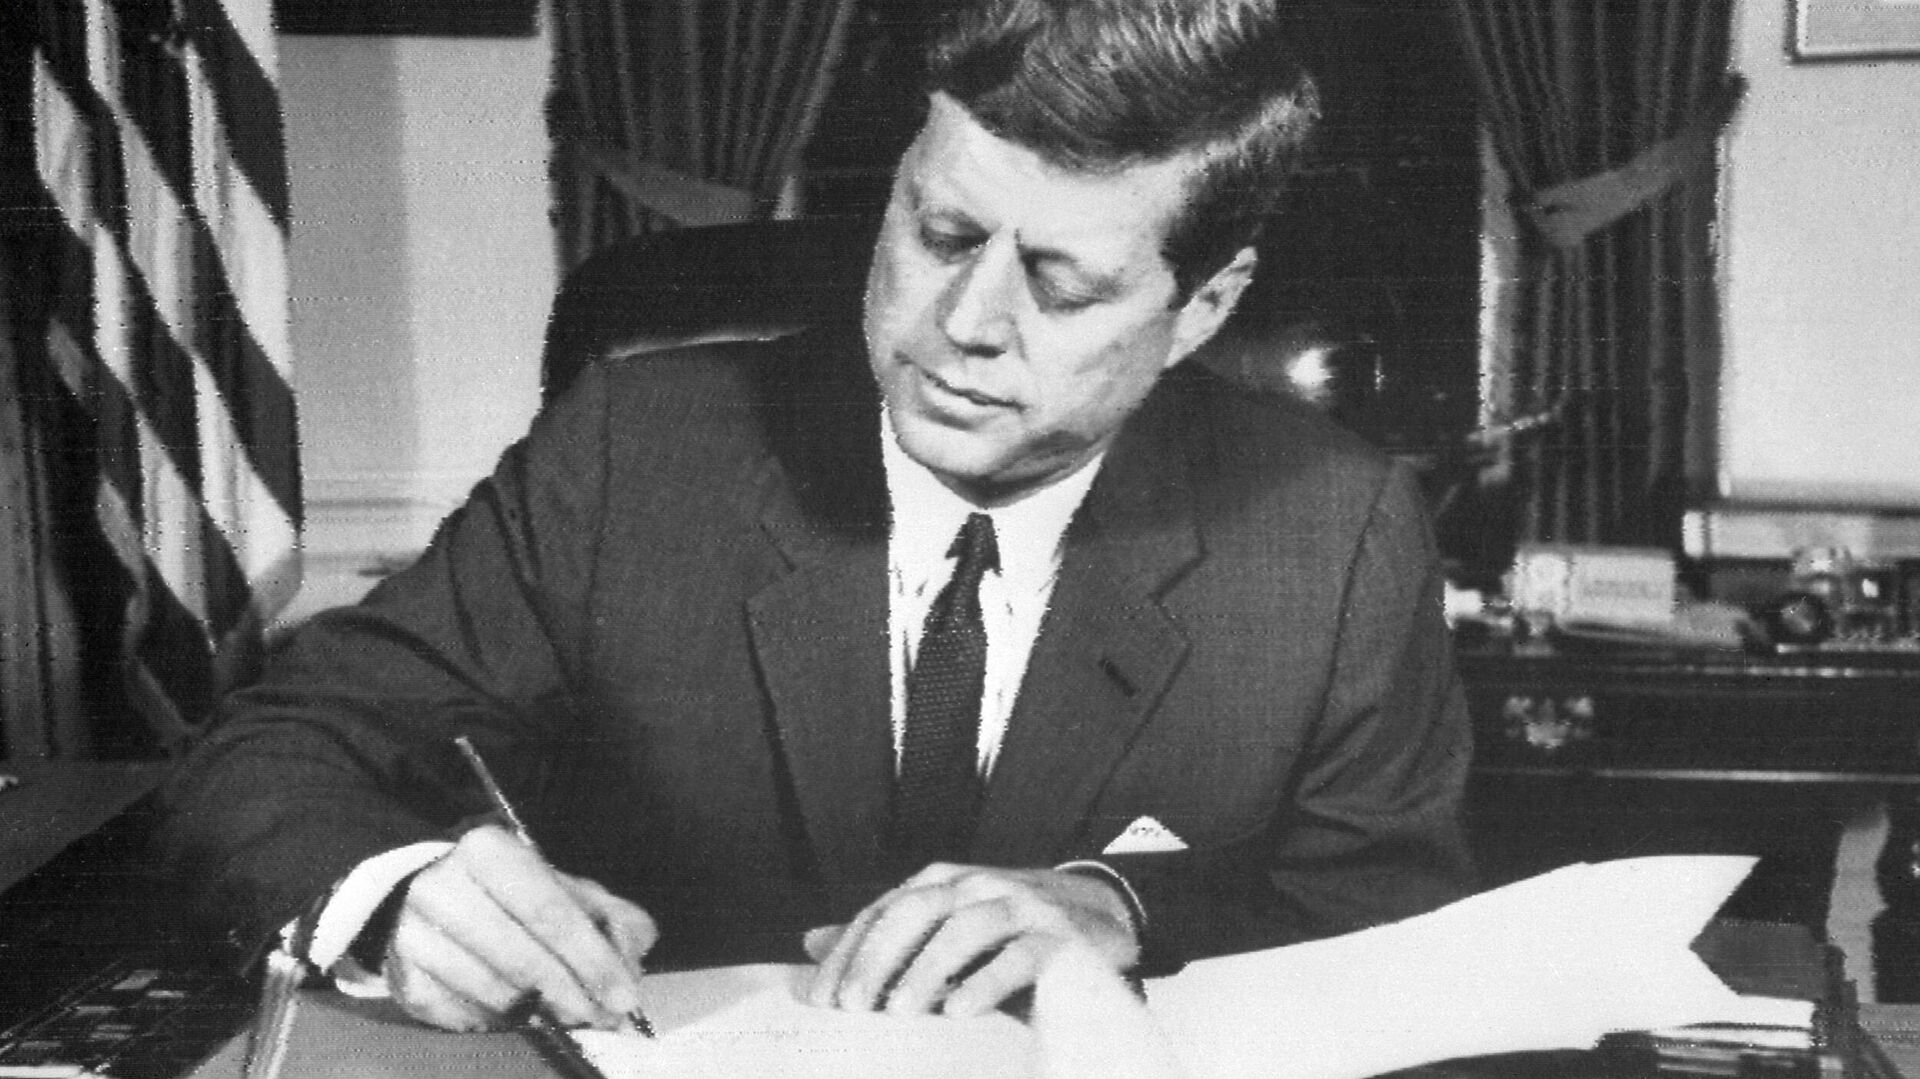 Президент США Джон Фицджеральд Кеннеди подписывает приказ о морской блокаде Кубы 24 октября 1962 года в Белом доме, Вашингтон, округ Колумбия - Sputnik Абхазия, 1920, 18.12.2021